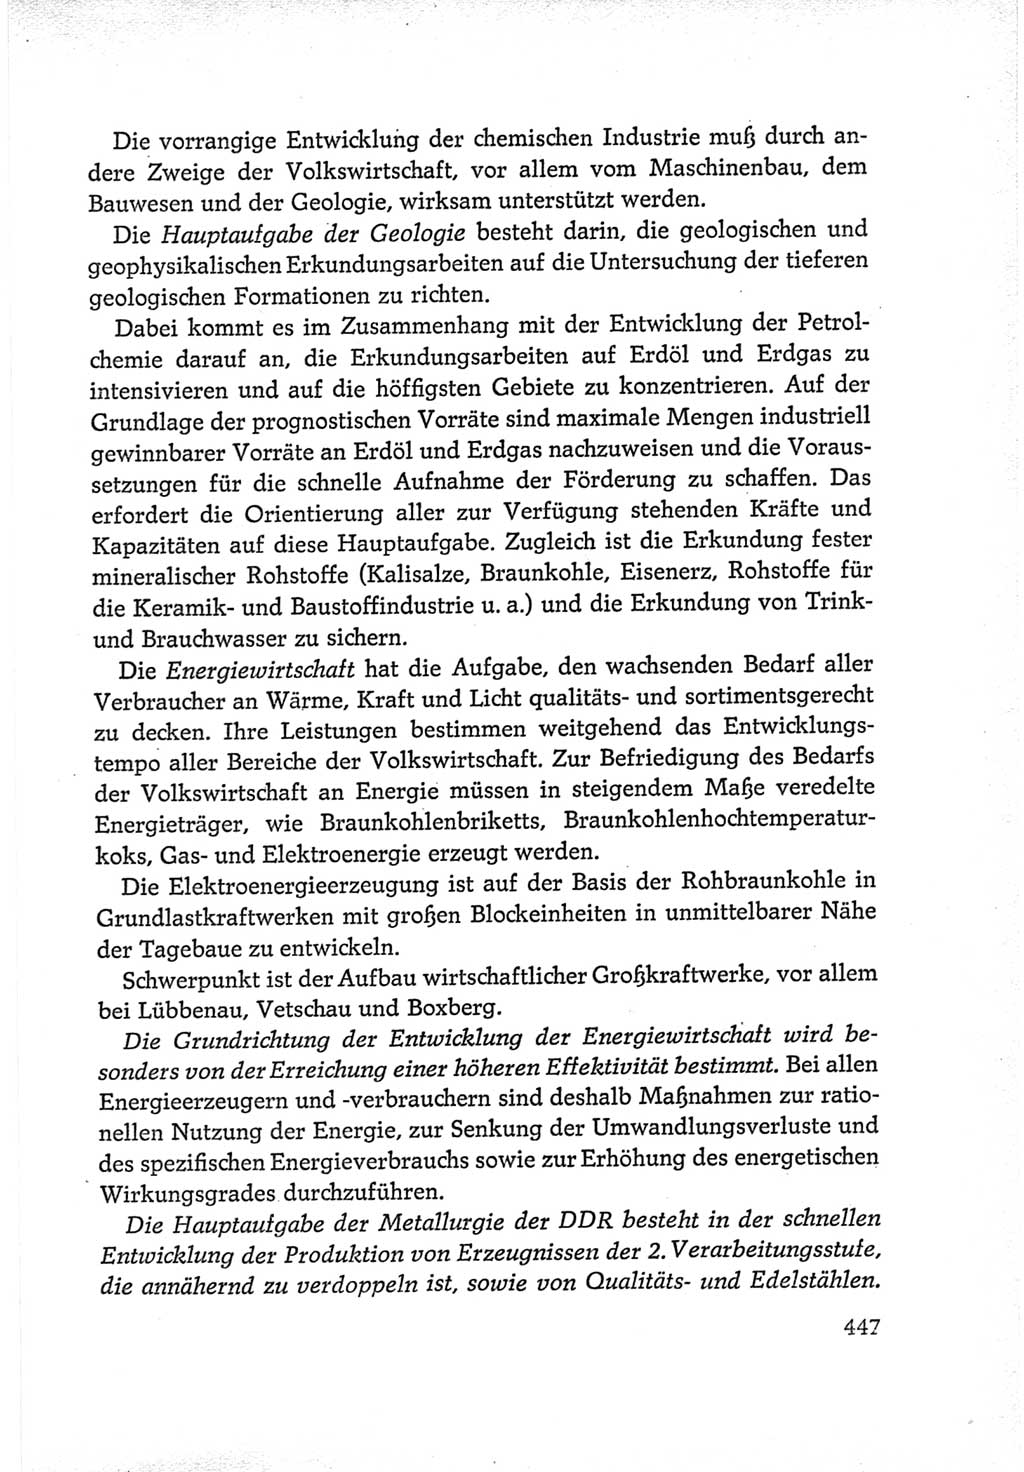 Protokoll der Verhandlungen des Ⅵ. Parteitages der Sozialistischen Einheitspartei Deutschlands (SED) [Deutsche Demokratische Republik (DDR)] 1963, Band Ⅳ, Seite 447 (Prot. Verh. Ⅵ. PT SED DDR 1963, Bd. Ⅳ, S. 447)